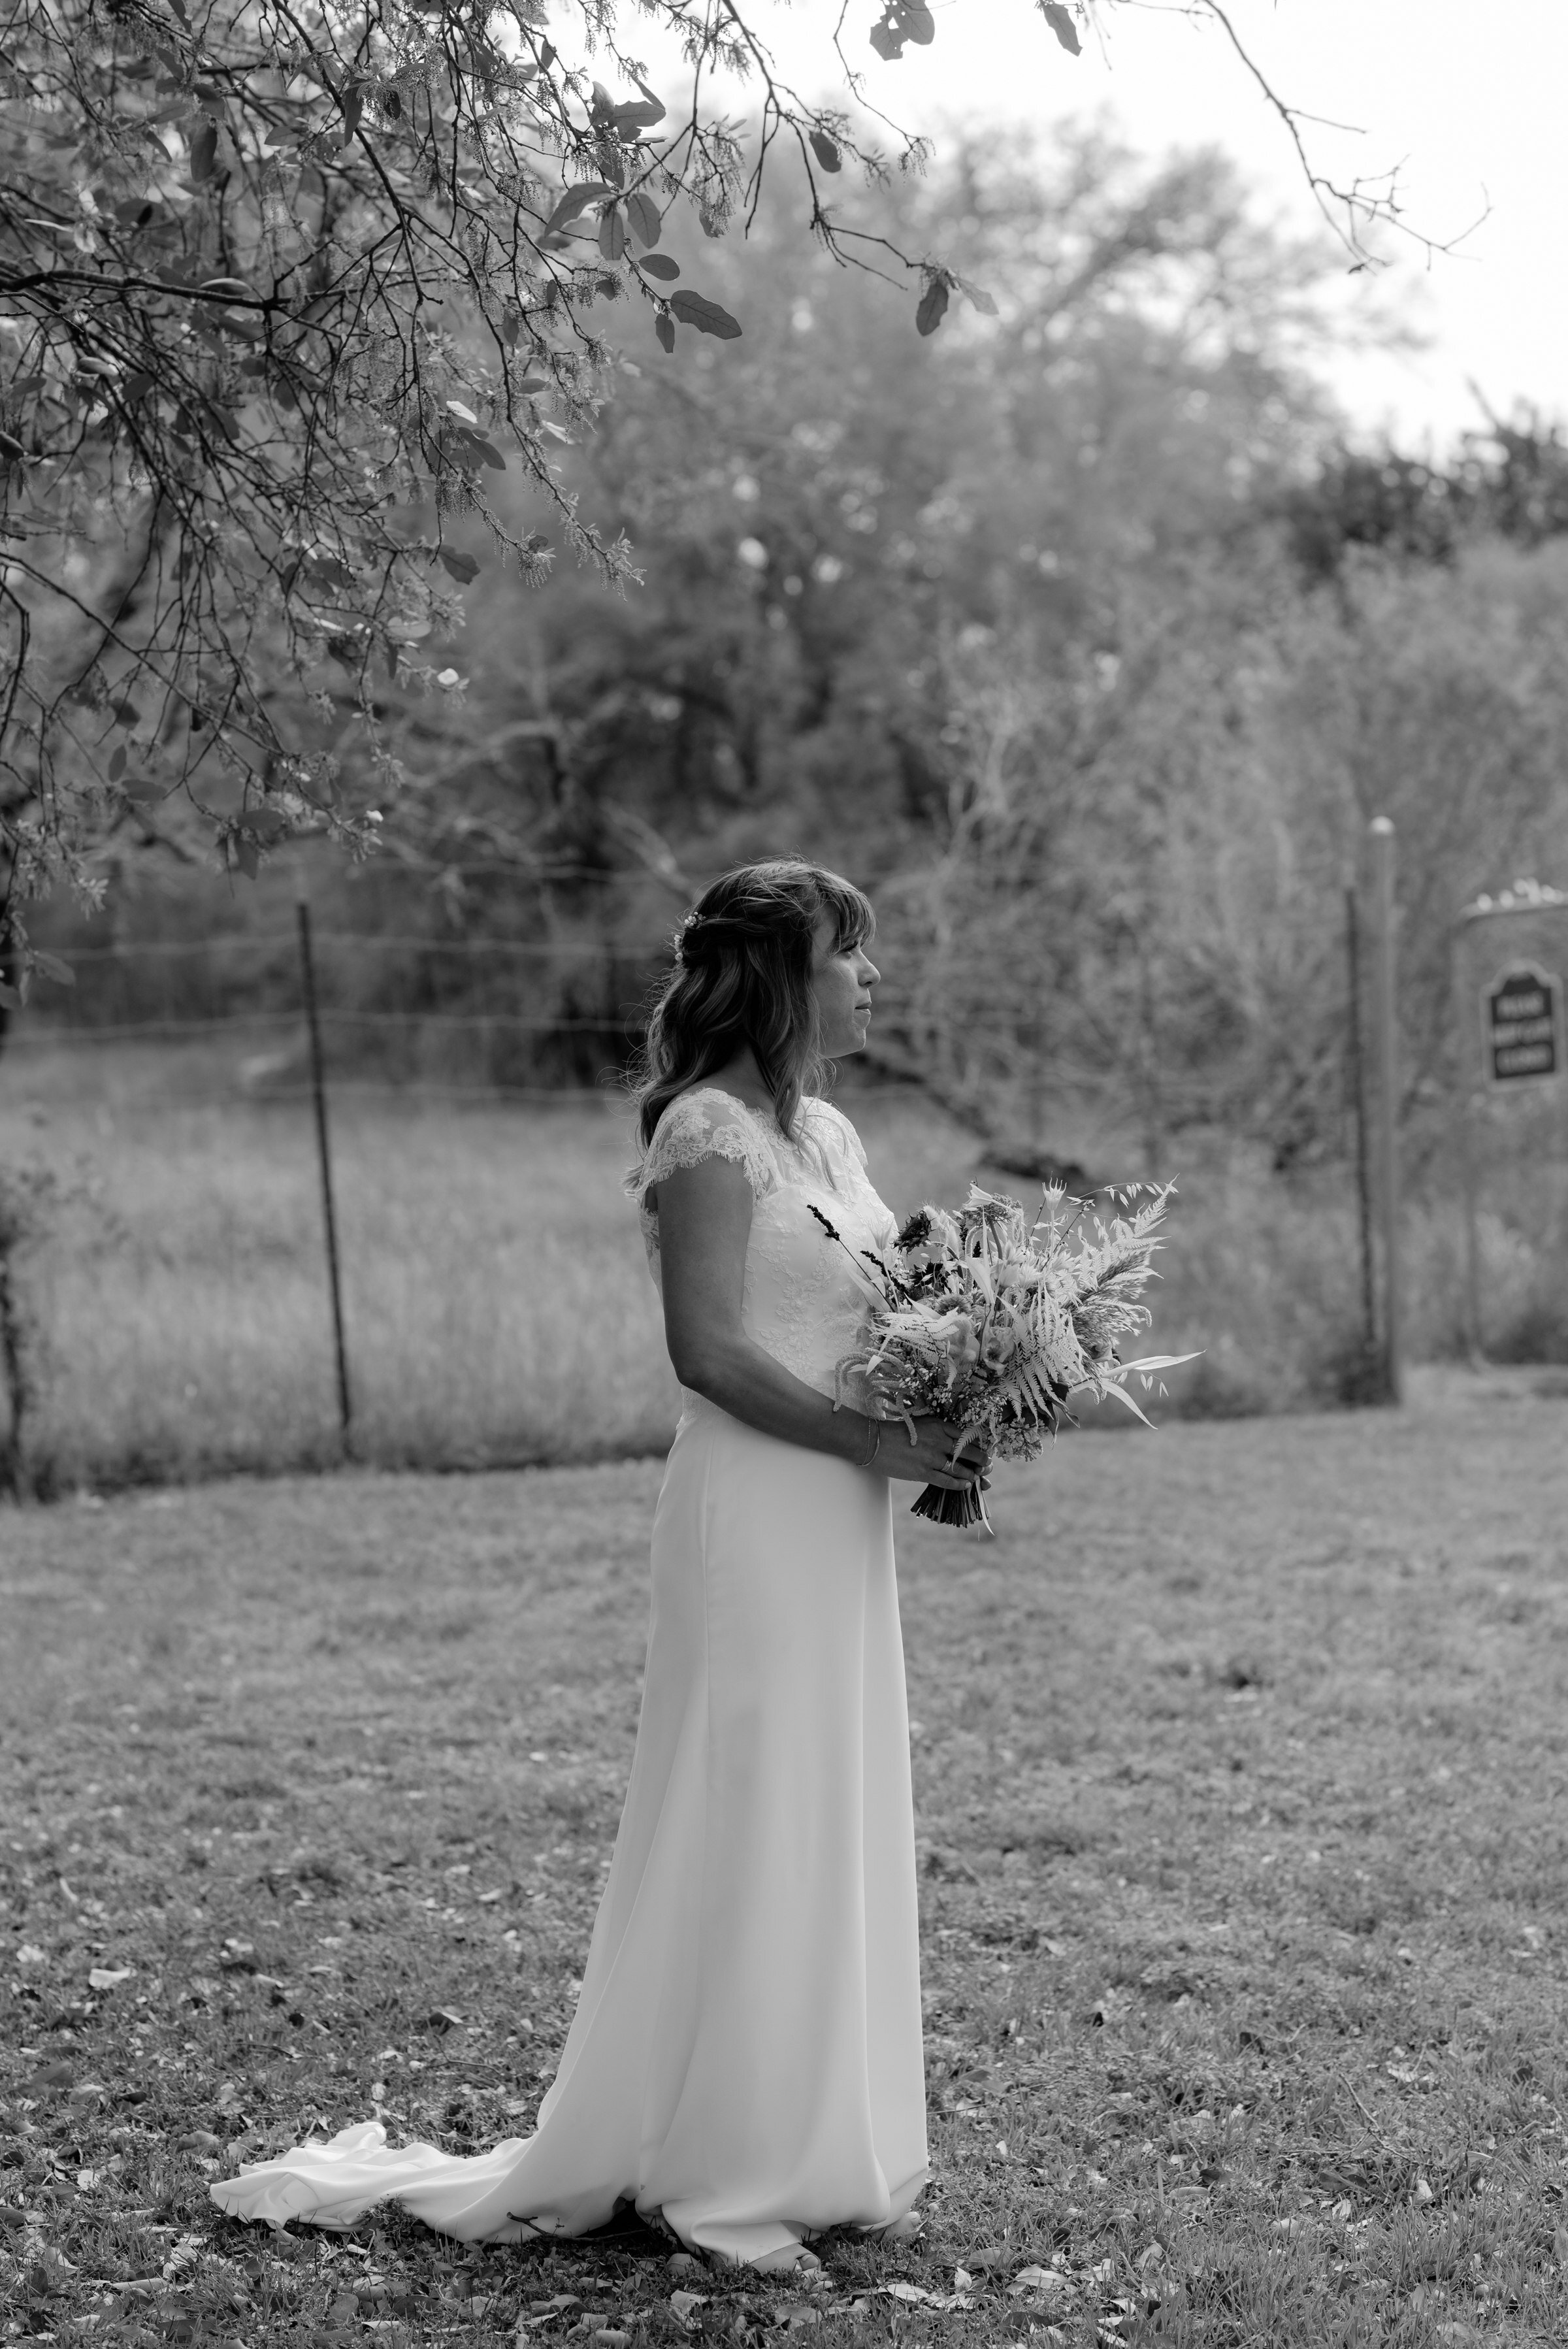  portrait of bride holding bouquet at plant at kyle wedding venue austin texas 